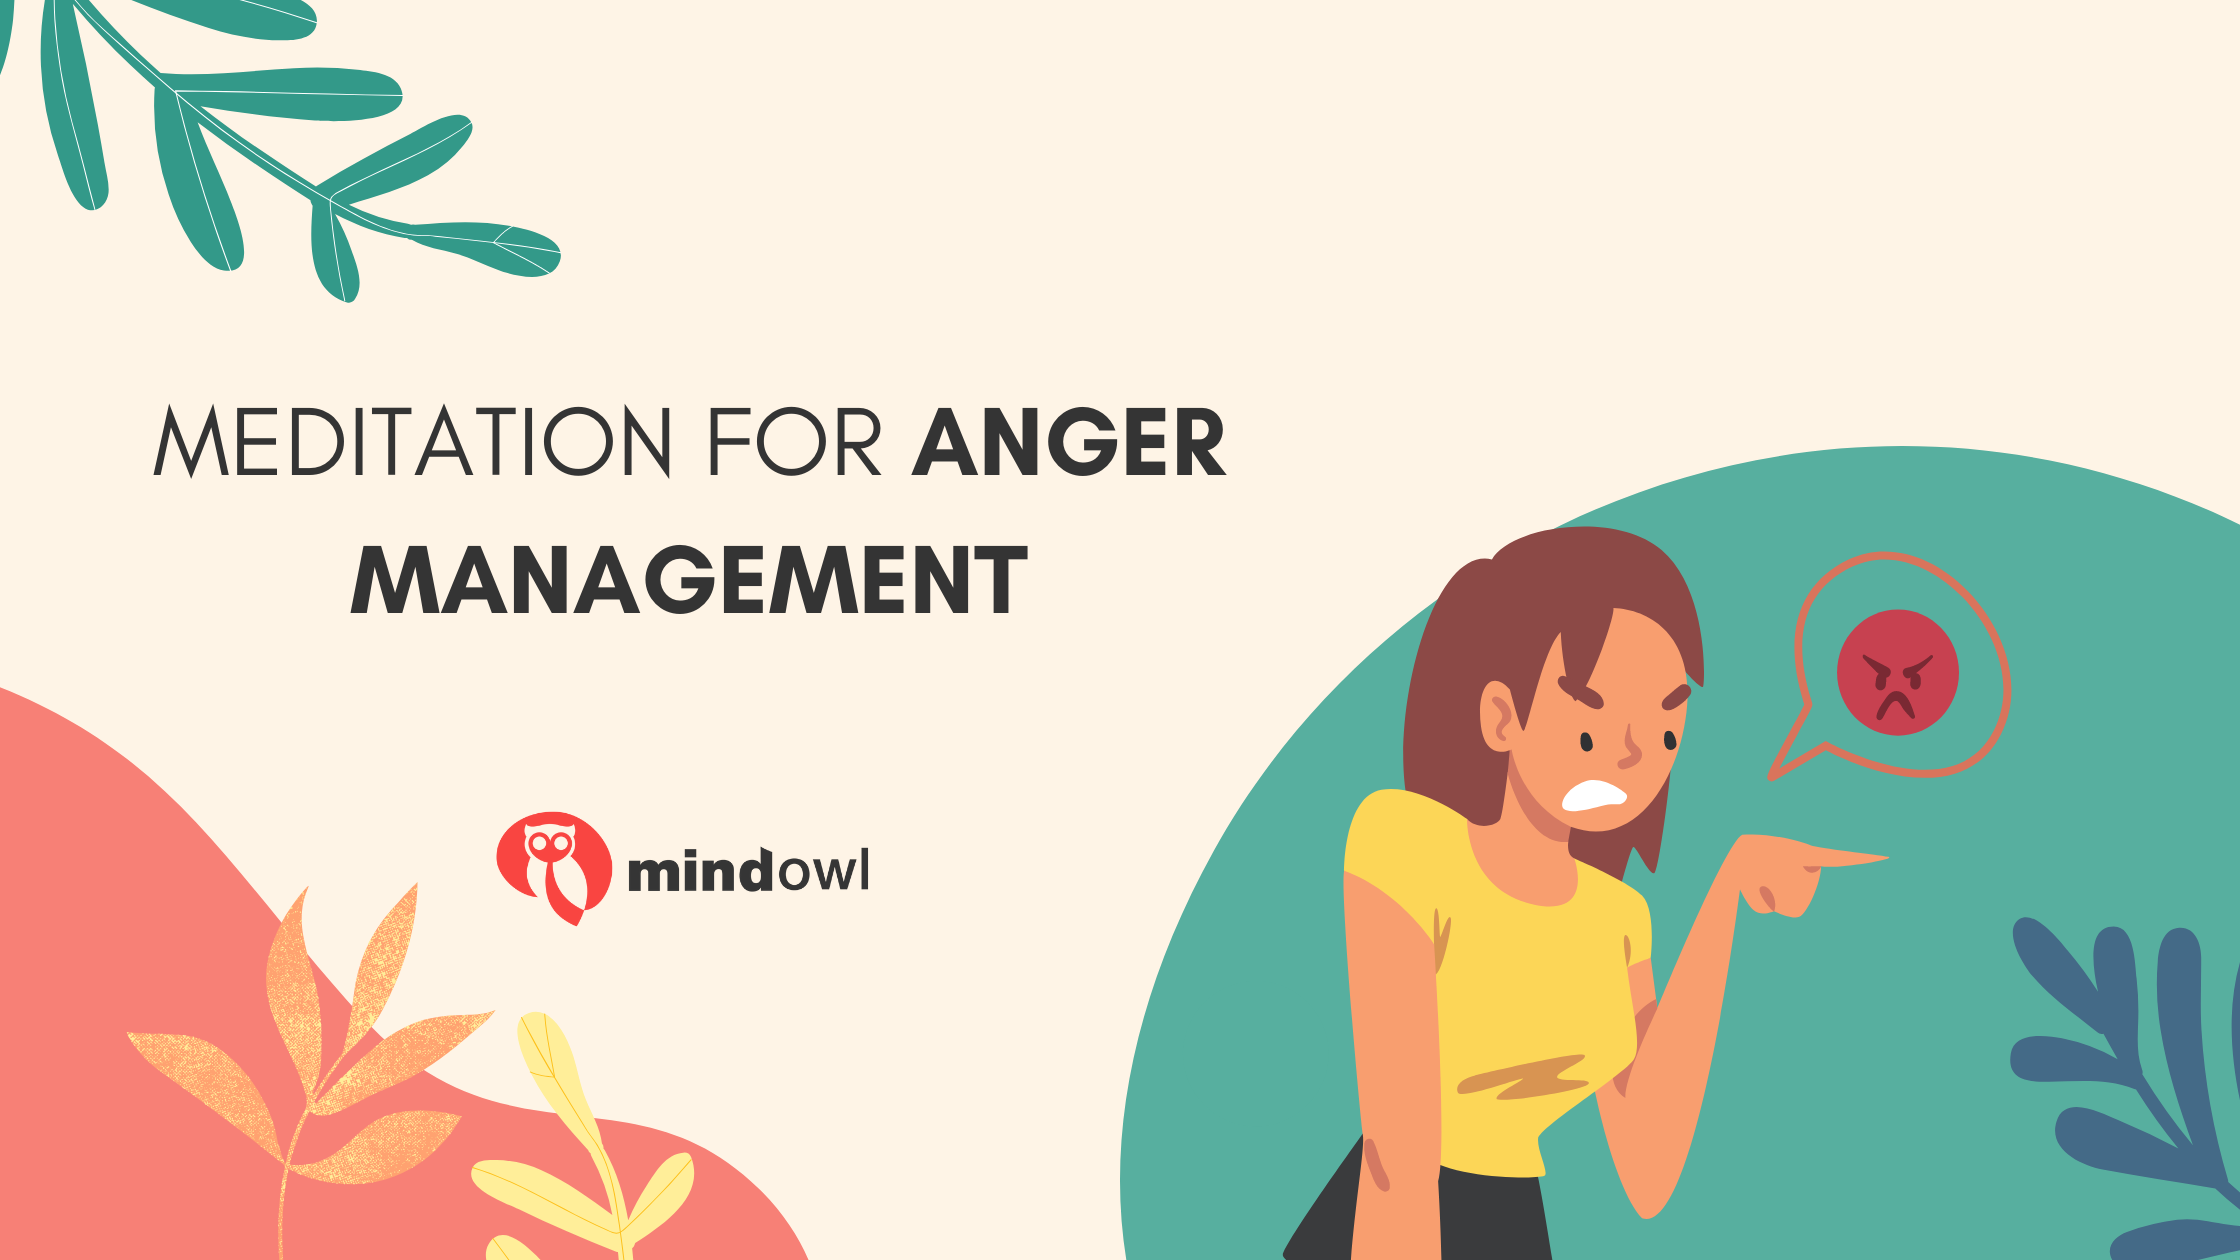 Meditation for anger management